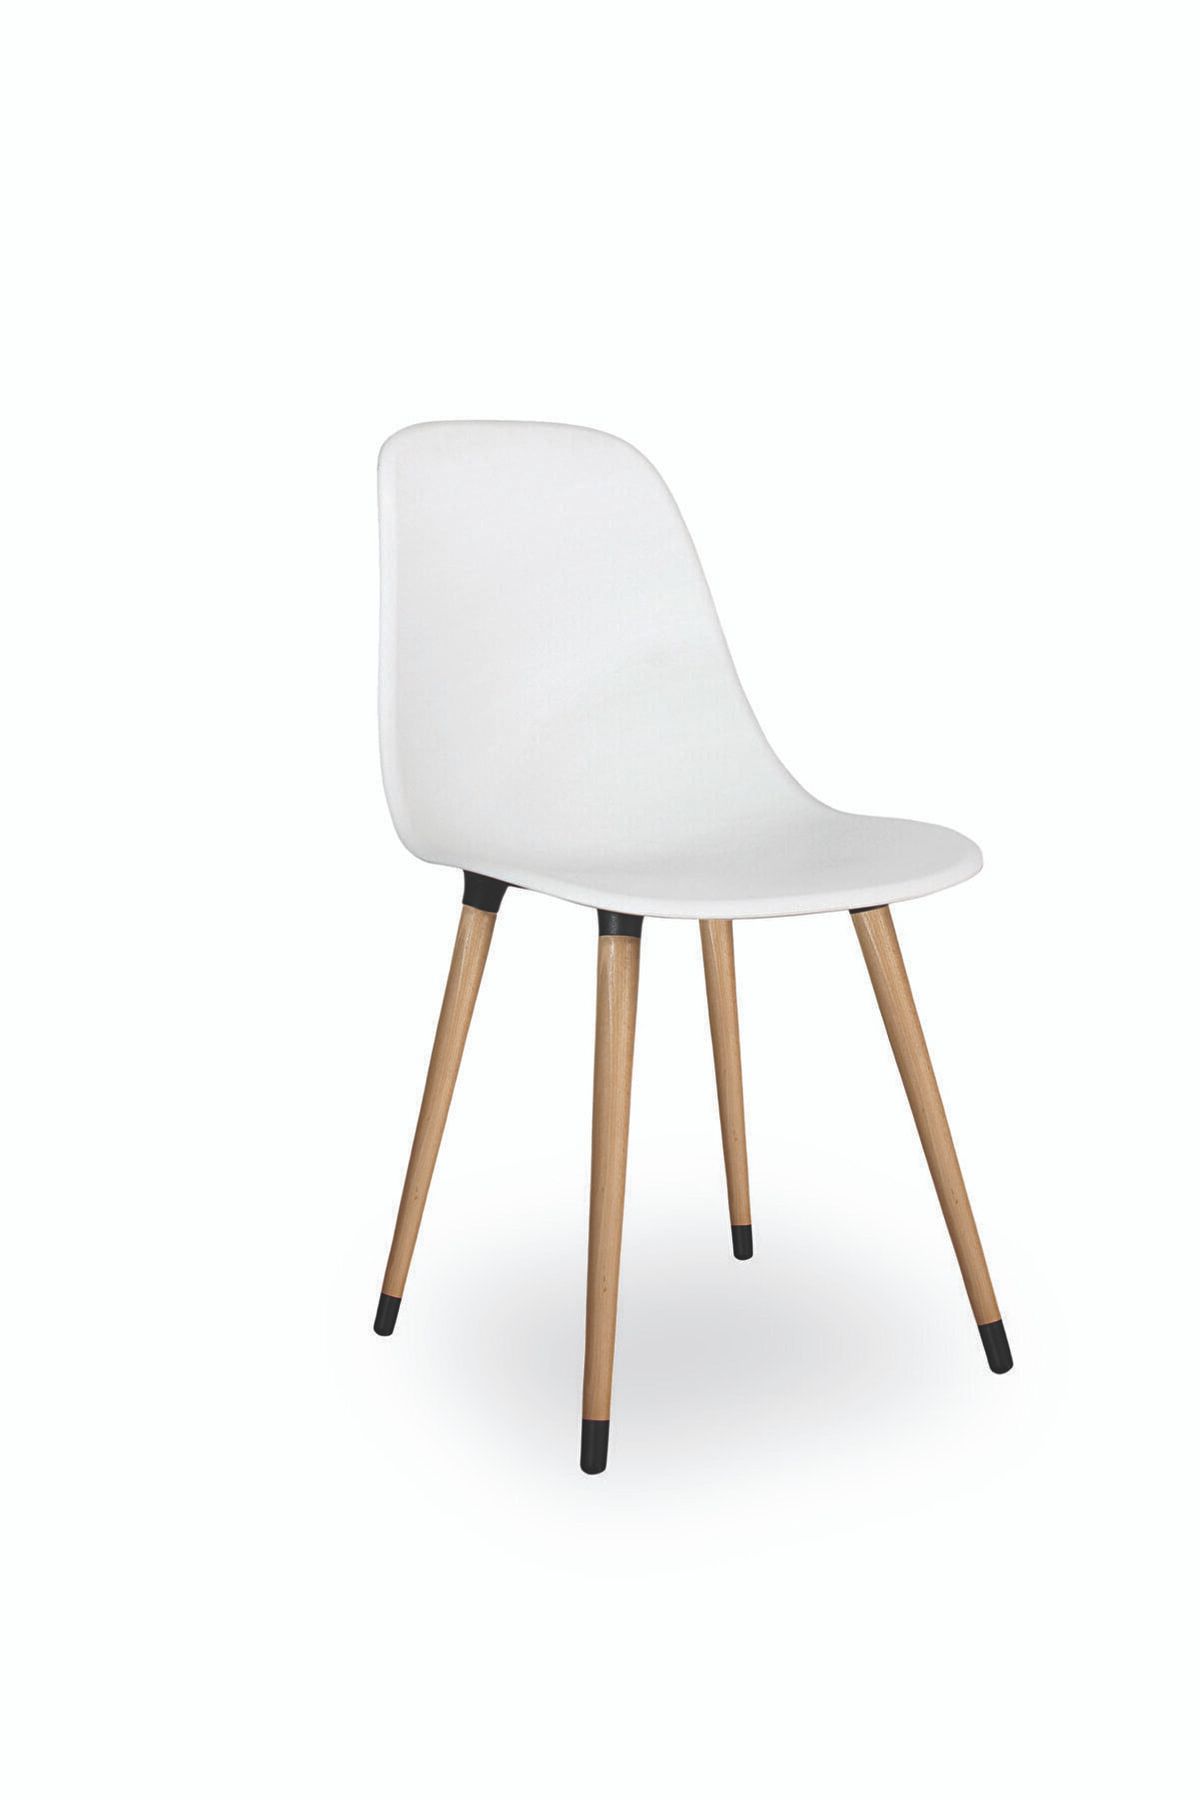 FLORADESİGN Mutfak Sandalyesi / Yemek Sandalyesi / Sandalye Takımı / Beyaz Sandalye / Flora Axen (BEYAZ)